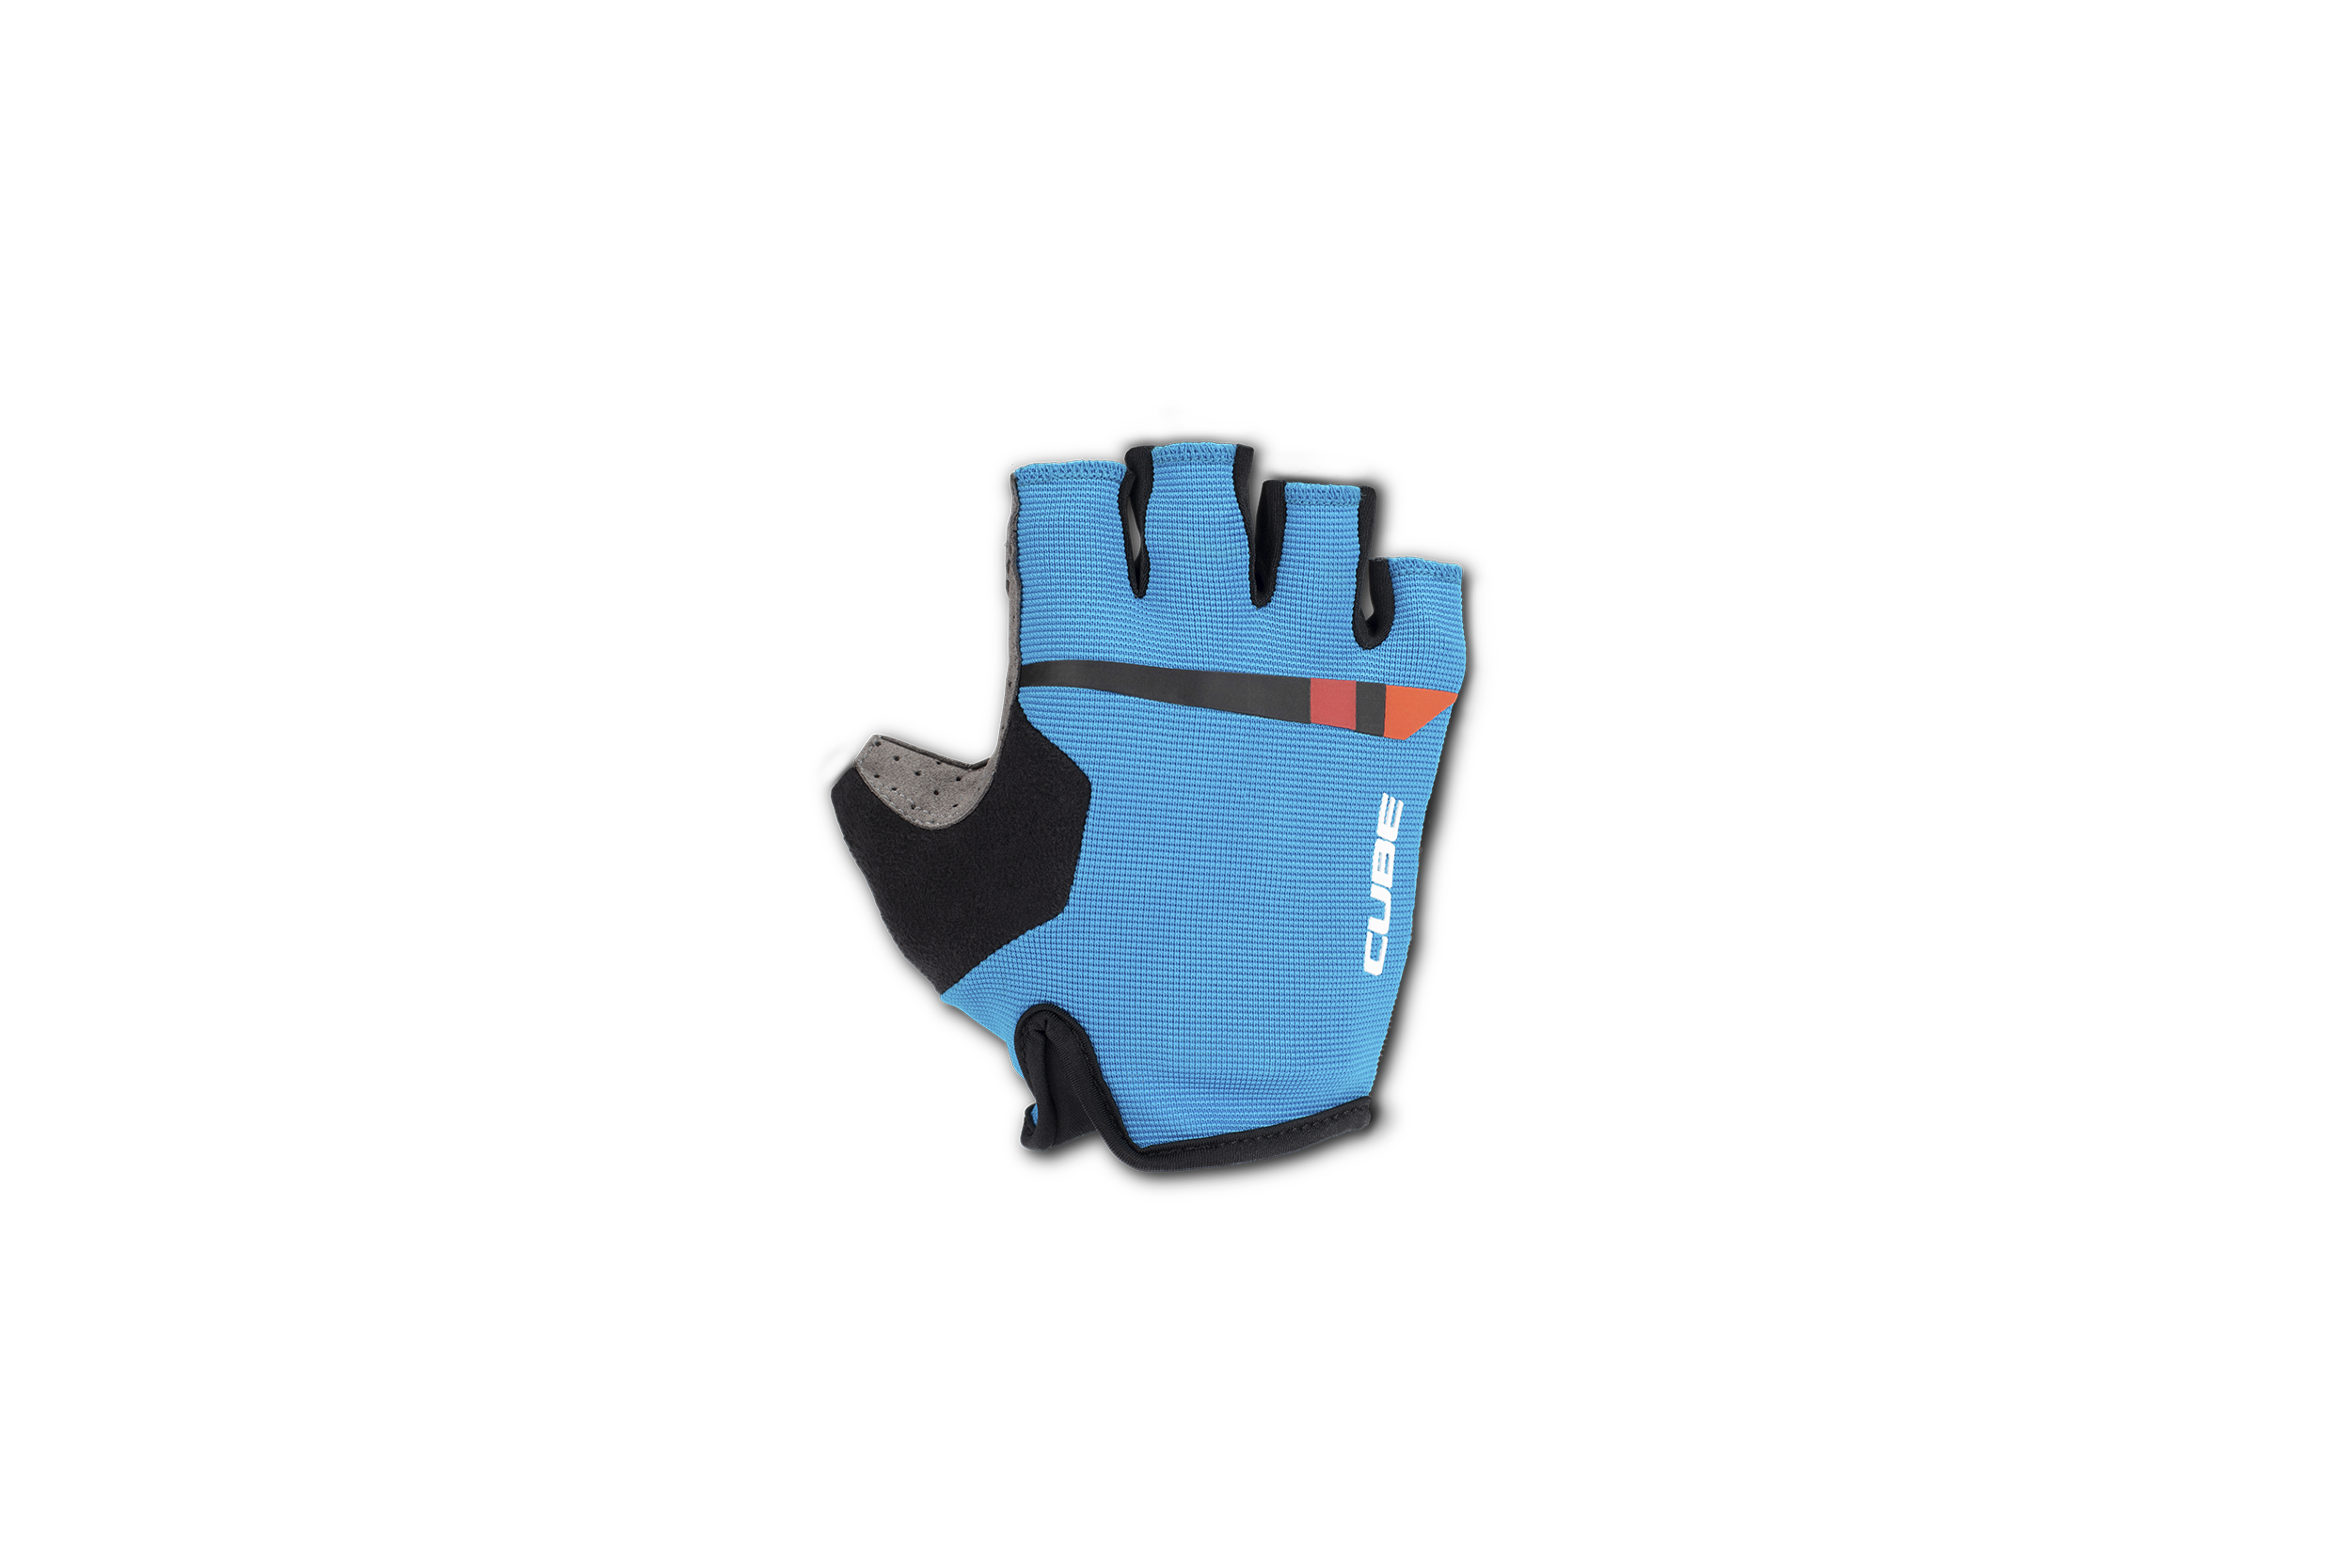 CUBE Handschuhe Performance kurzfinger